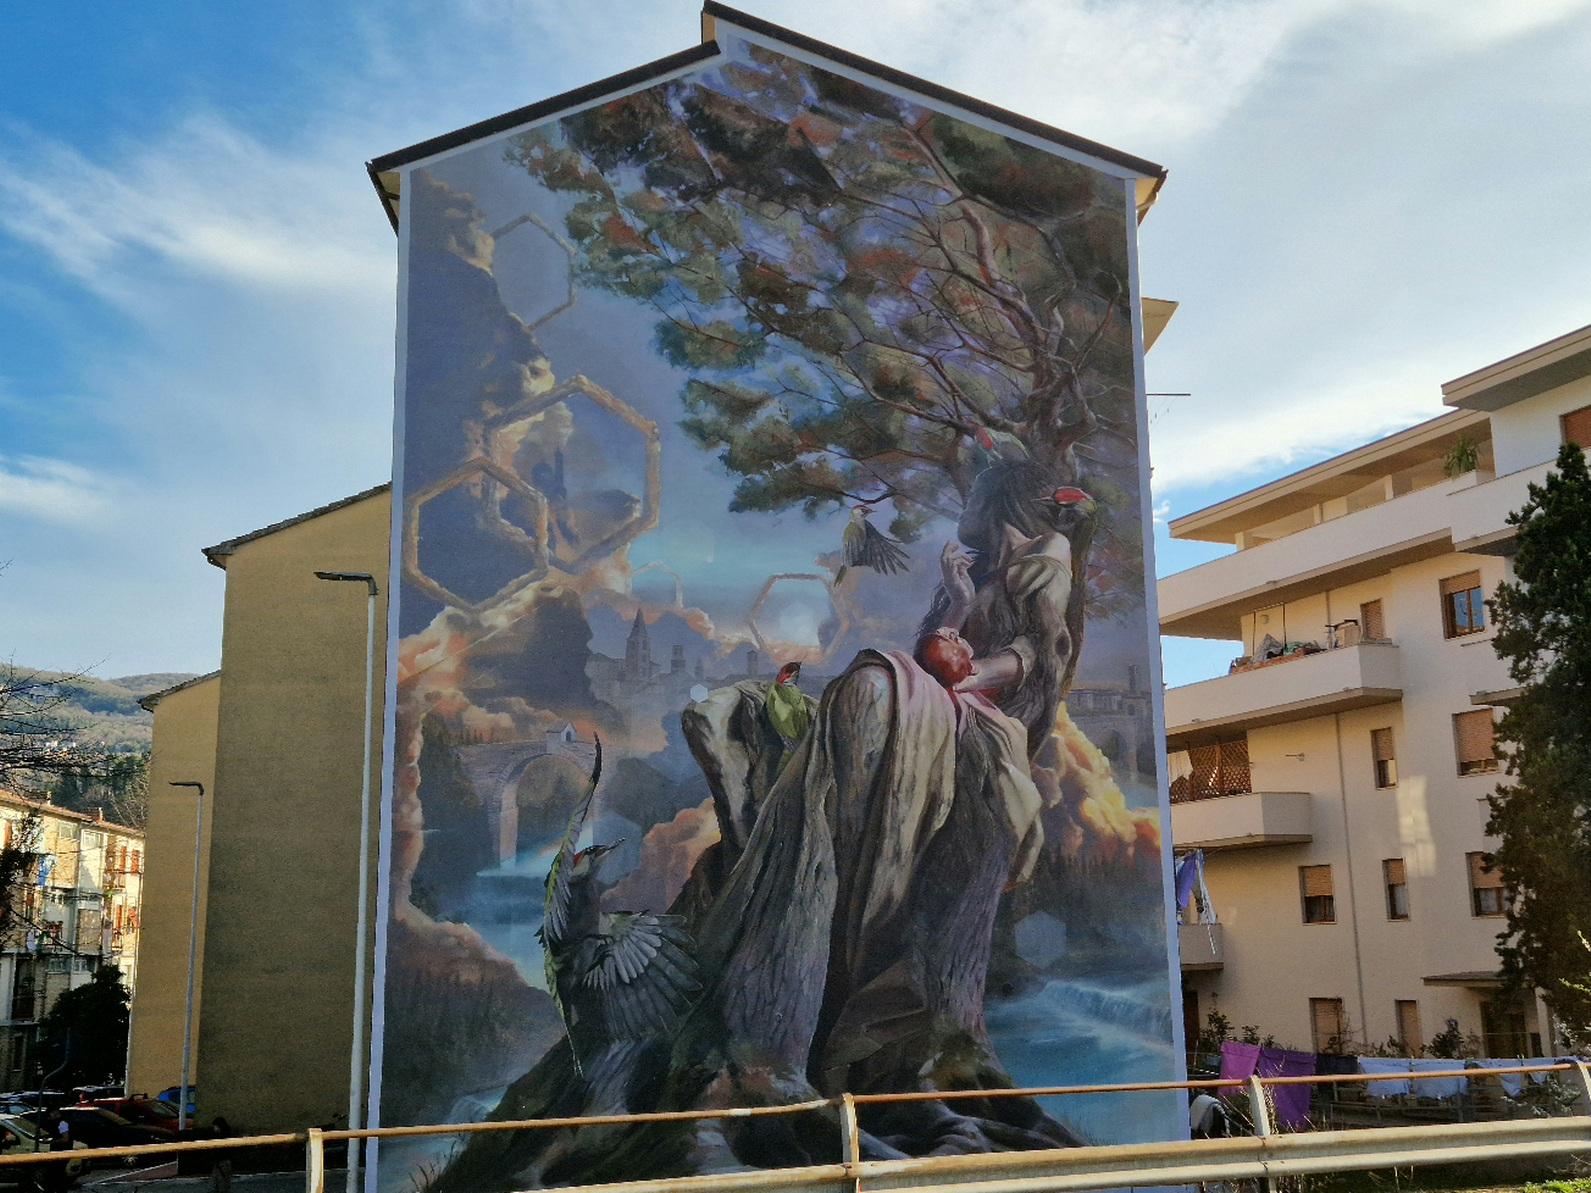 La leggenda di Picus nel bellissimo murale consegnato da Arte Pubblica alla città 